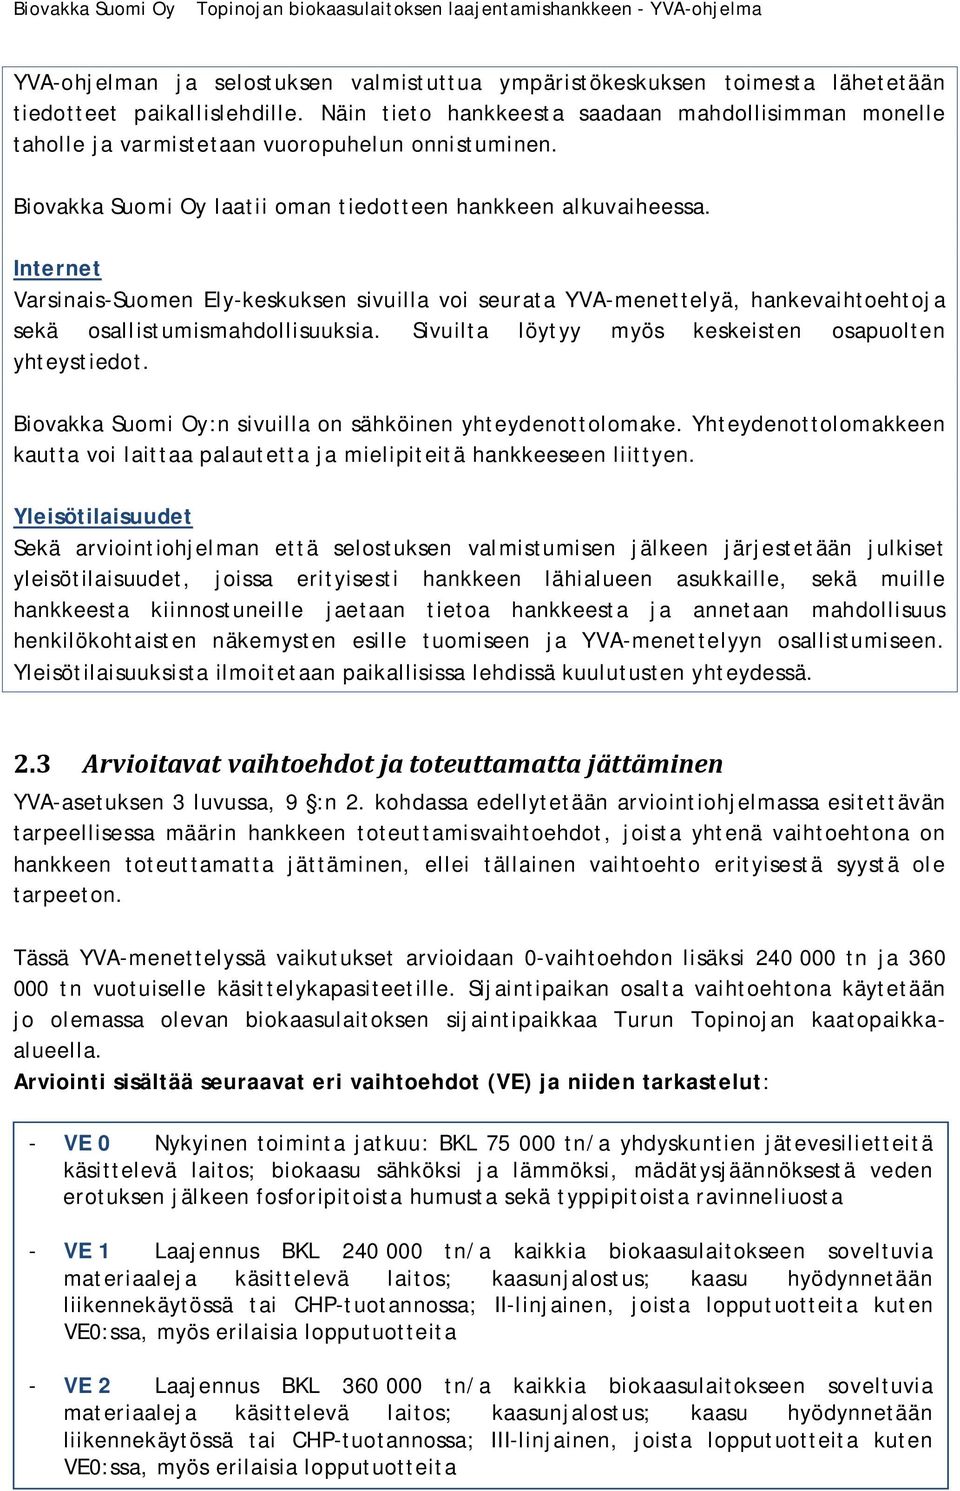 Internet Varsinais-Suomen Ely-keskuksen sivuilla voi seurata YVA-menettelyä, hankevaihtoehtoja sekä osallistumismahdollisuuksia. Sivuilta löytyy myös keskeisten osapuolten yhteystiedot.